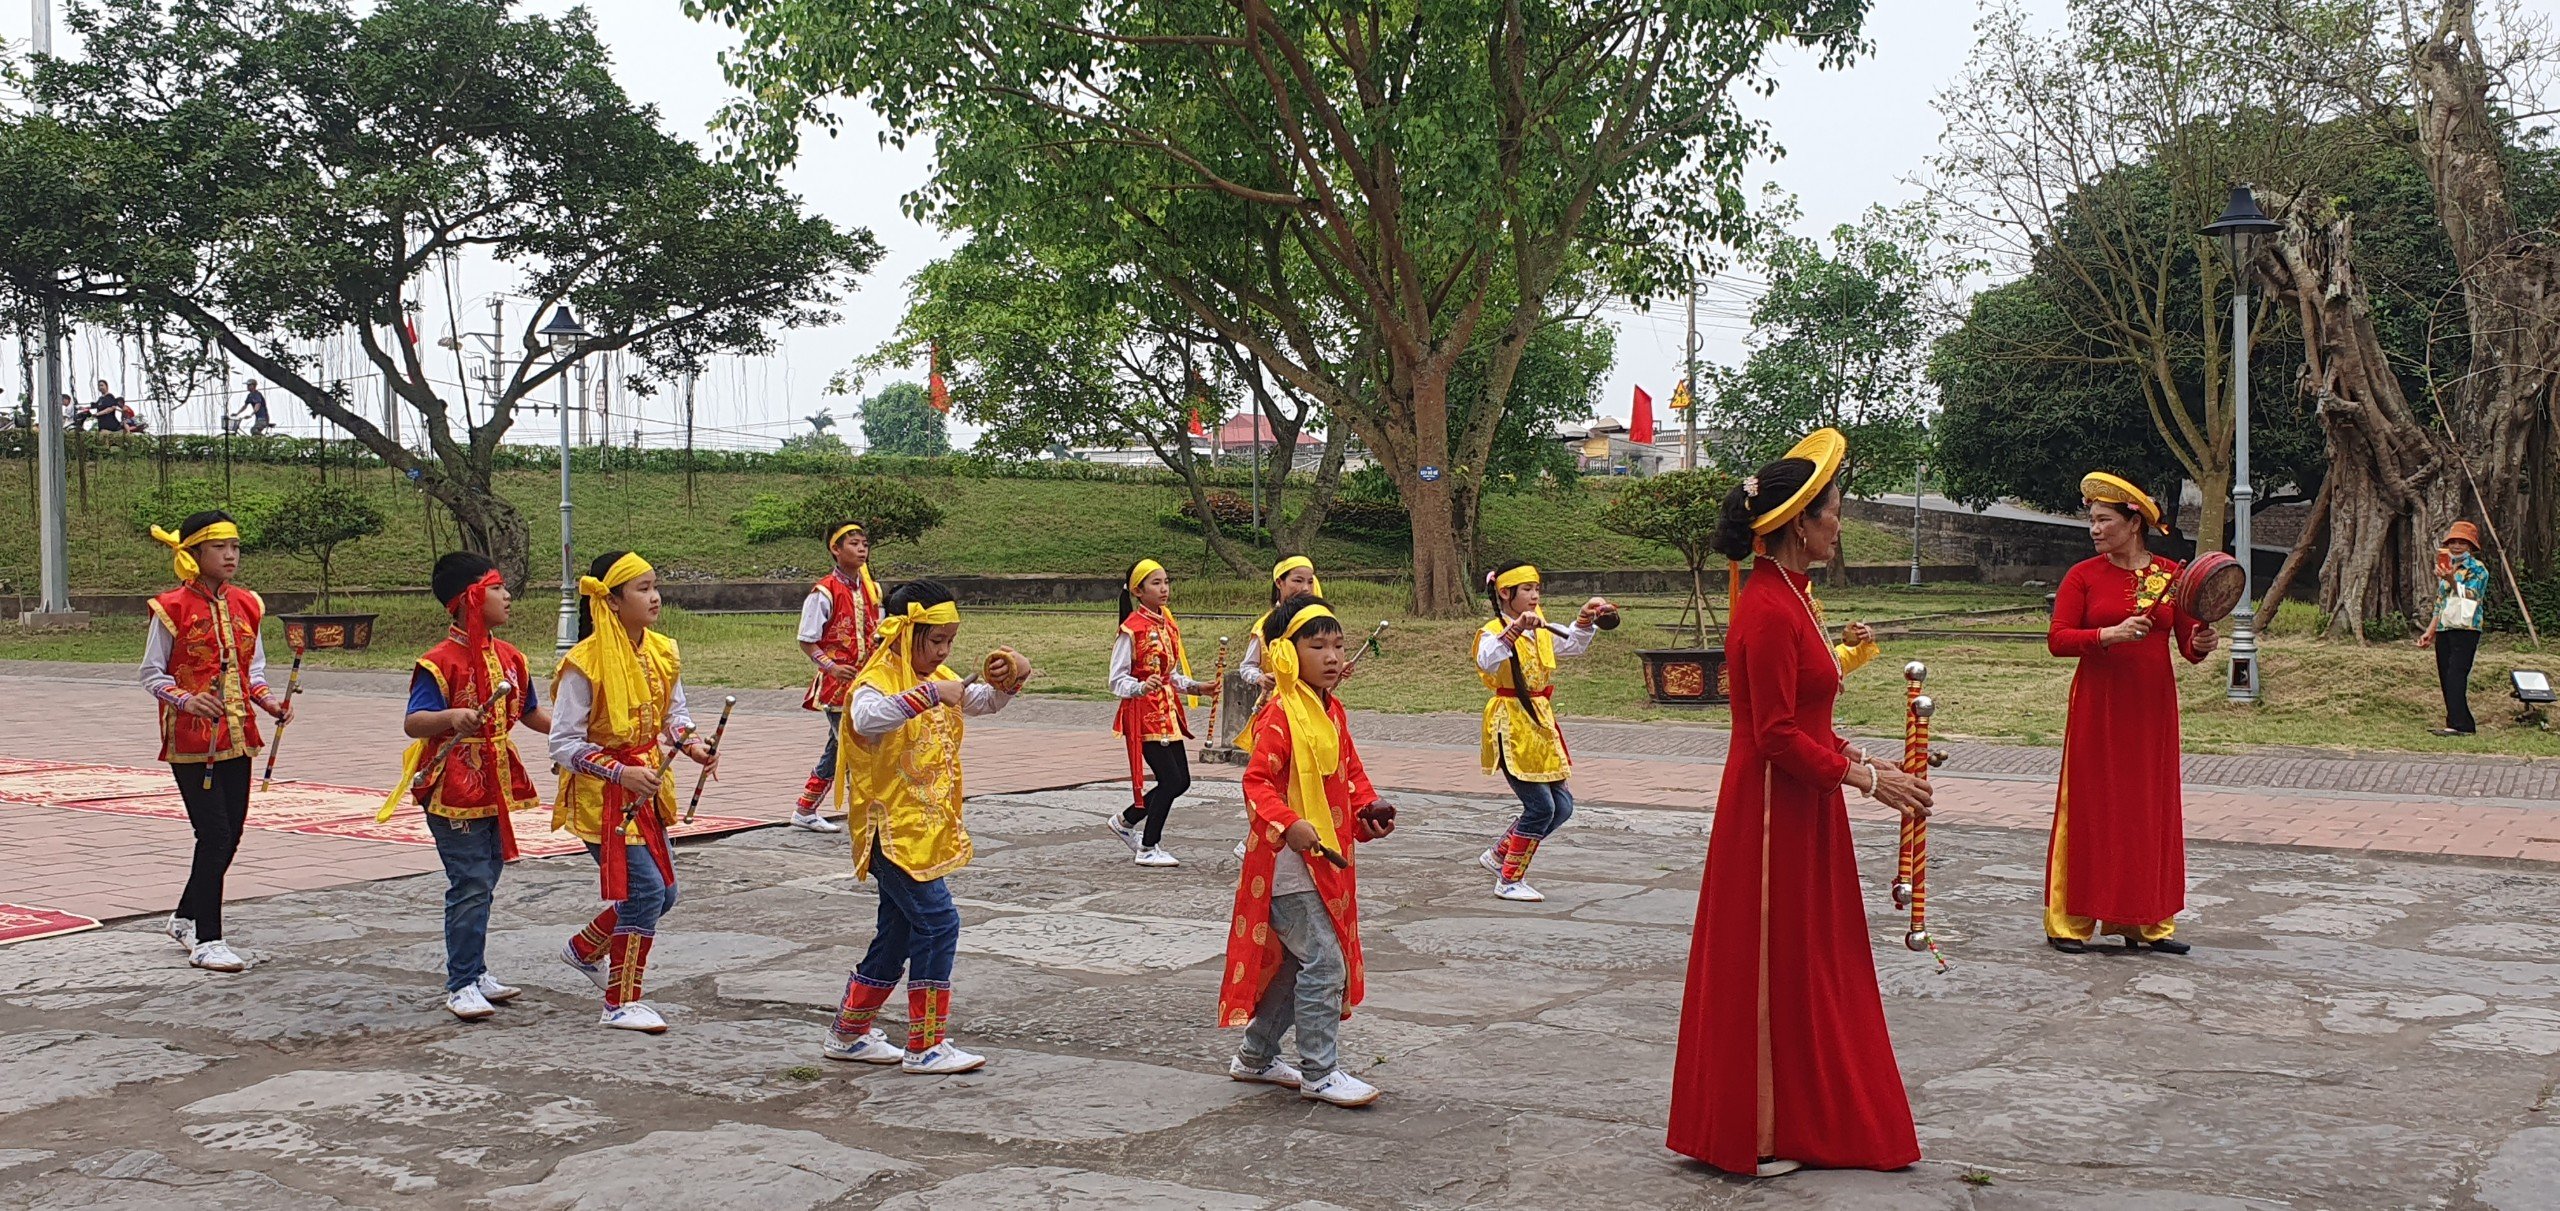 Thái Bình: Nhiều hoạt động đặc sắc tại Chùa Keo dịp lễ 30/4 - 1/5- Ảnh 3.